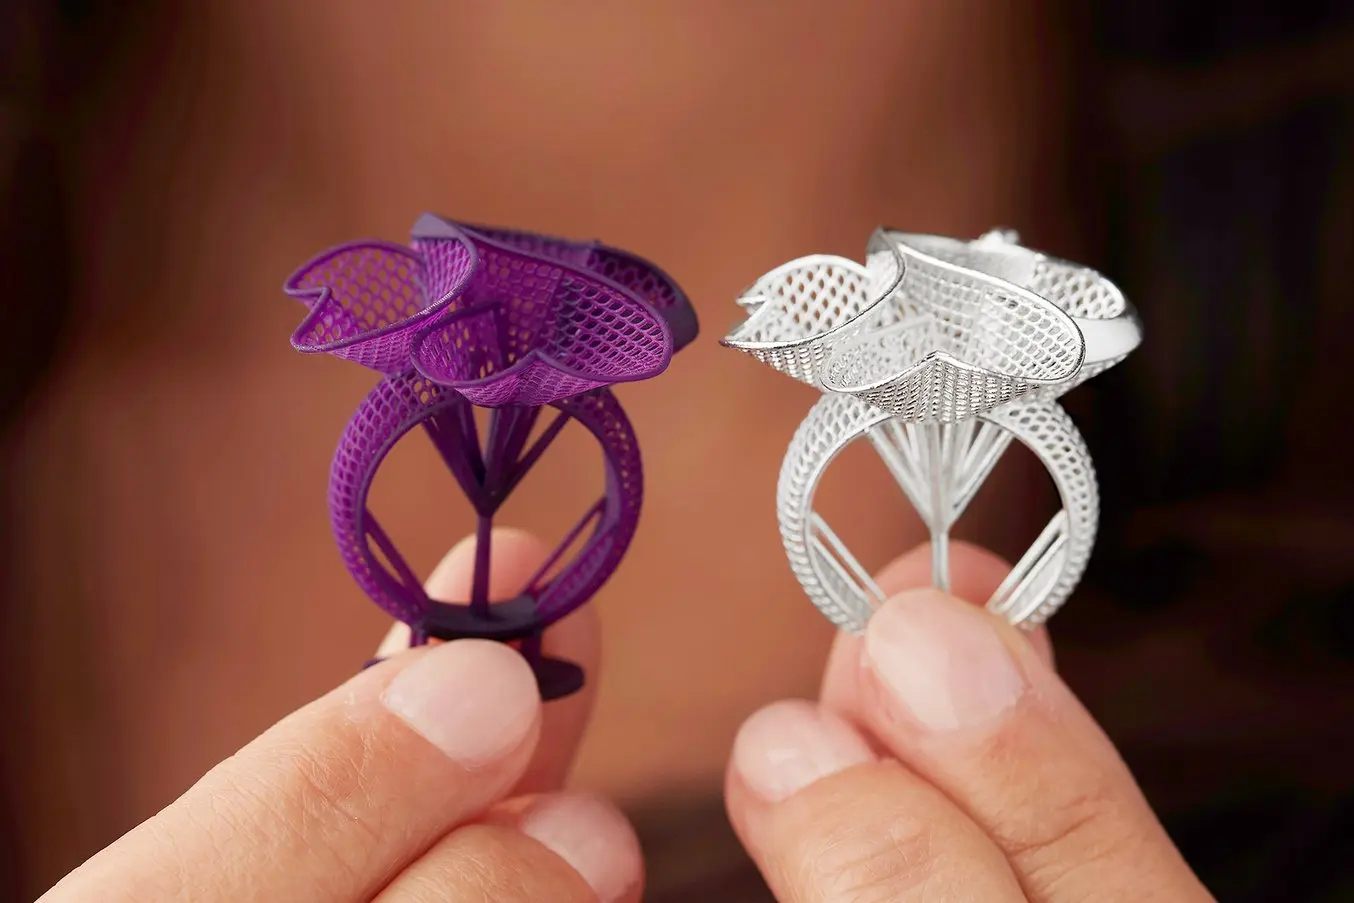 پرینتر سه بعدی در جواهر سازی کاربرد فراوان دارد.